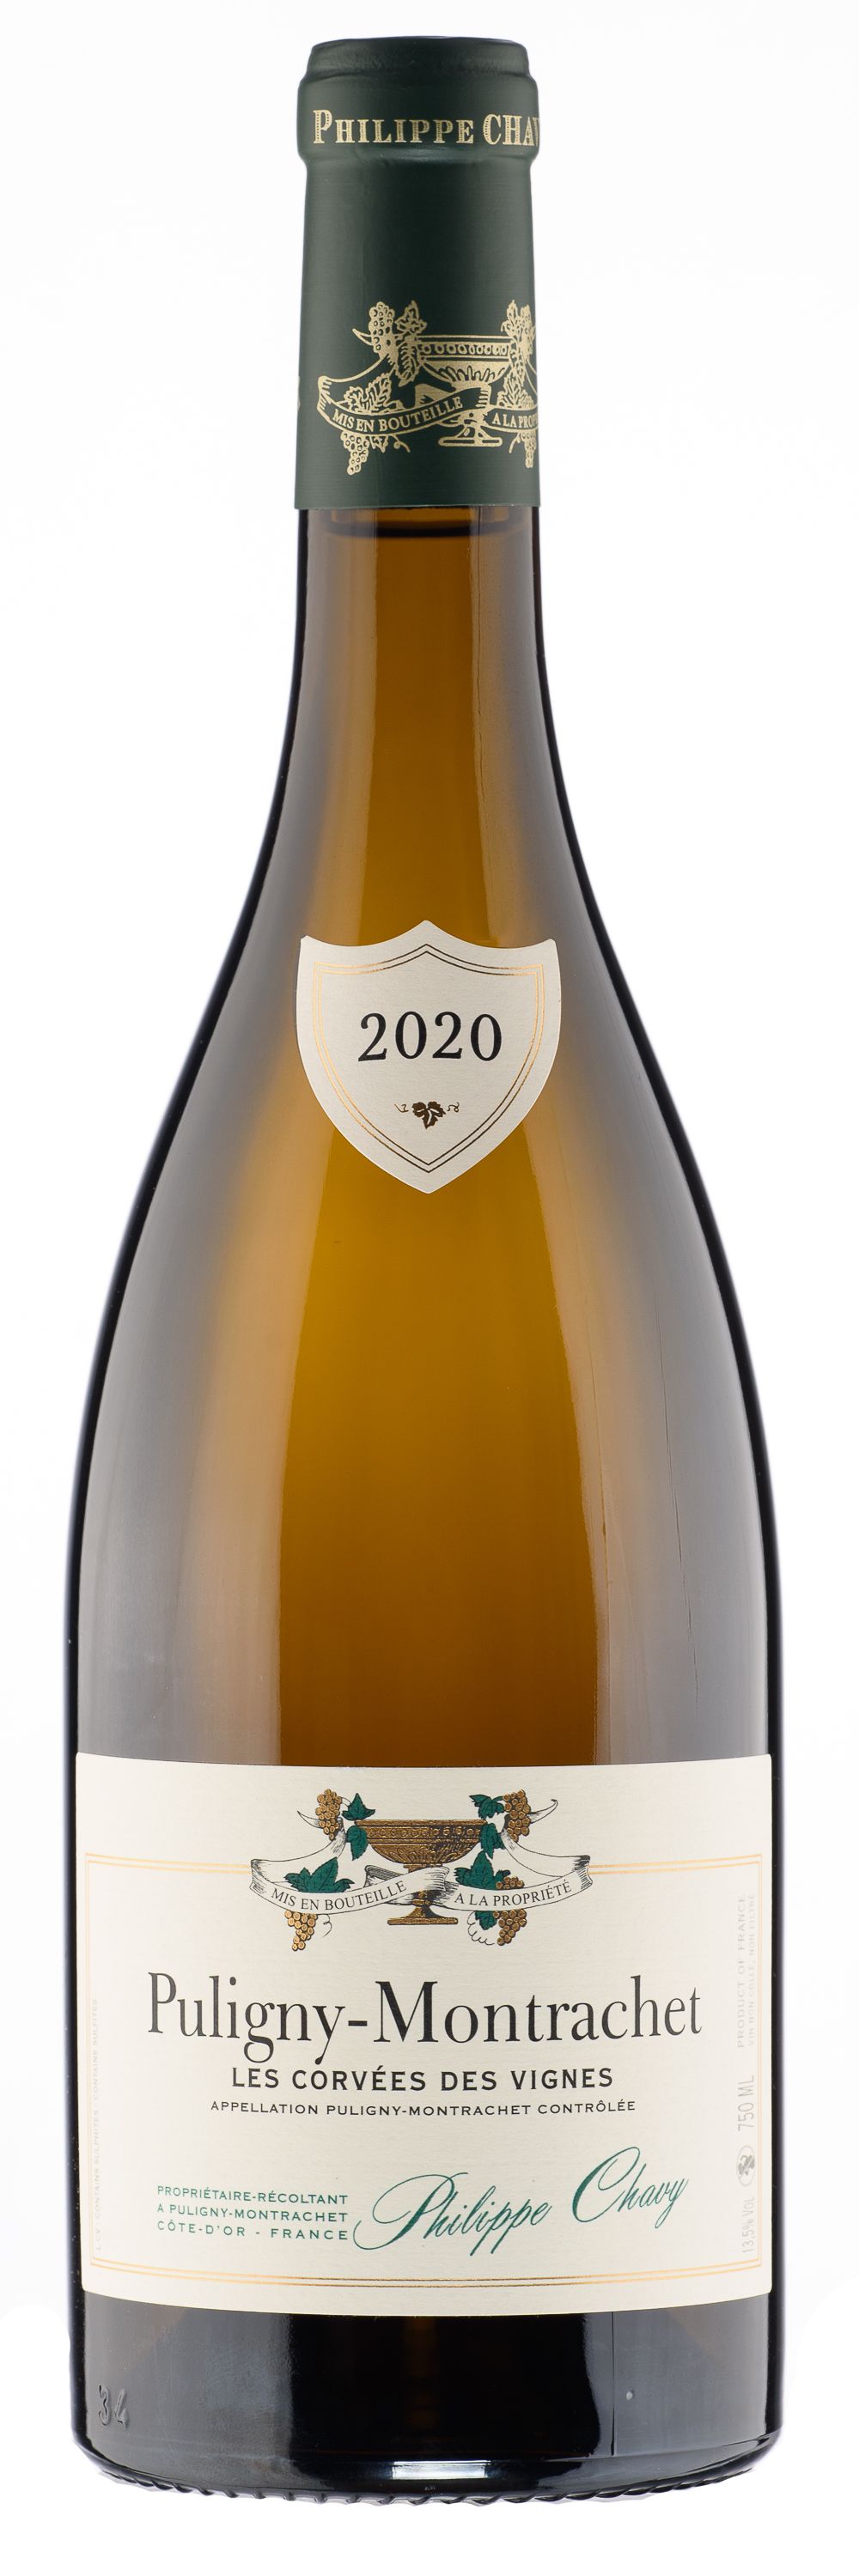 Domaine Philippe Chavy, Puligny-Montrachet Les Corvees Des Vignes, 2020